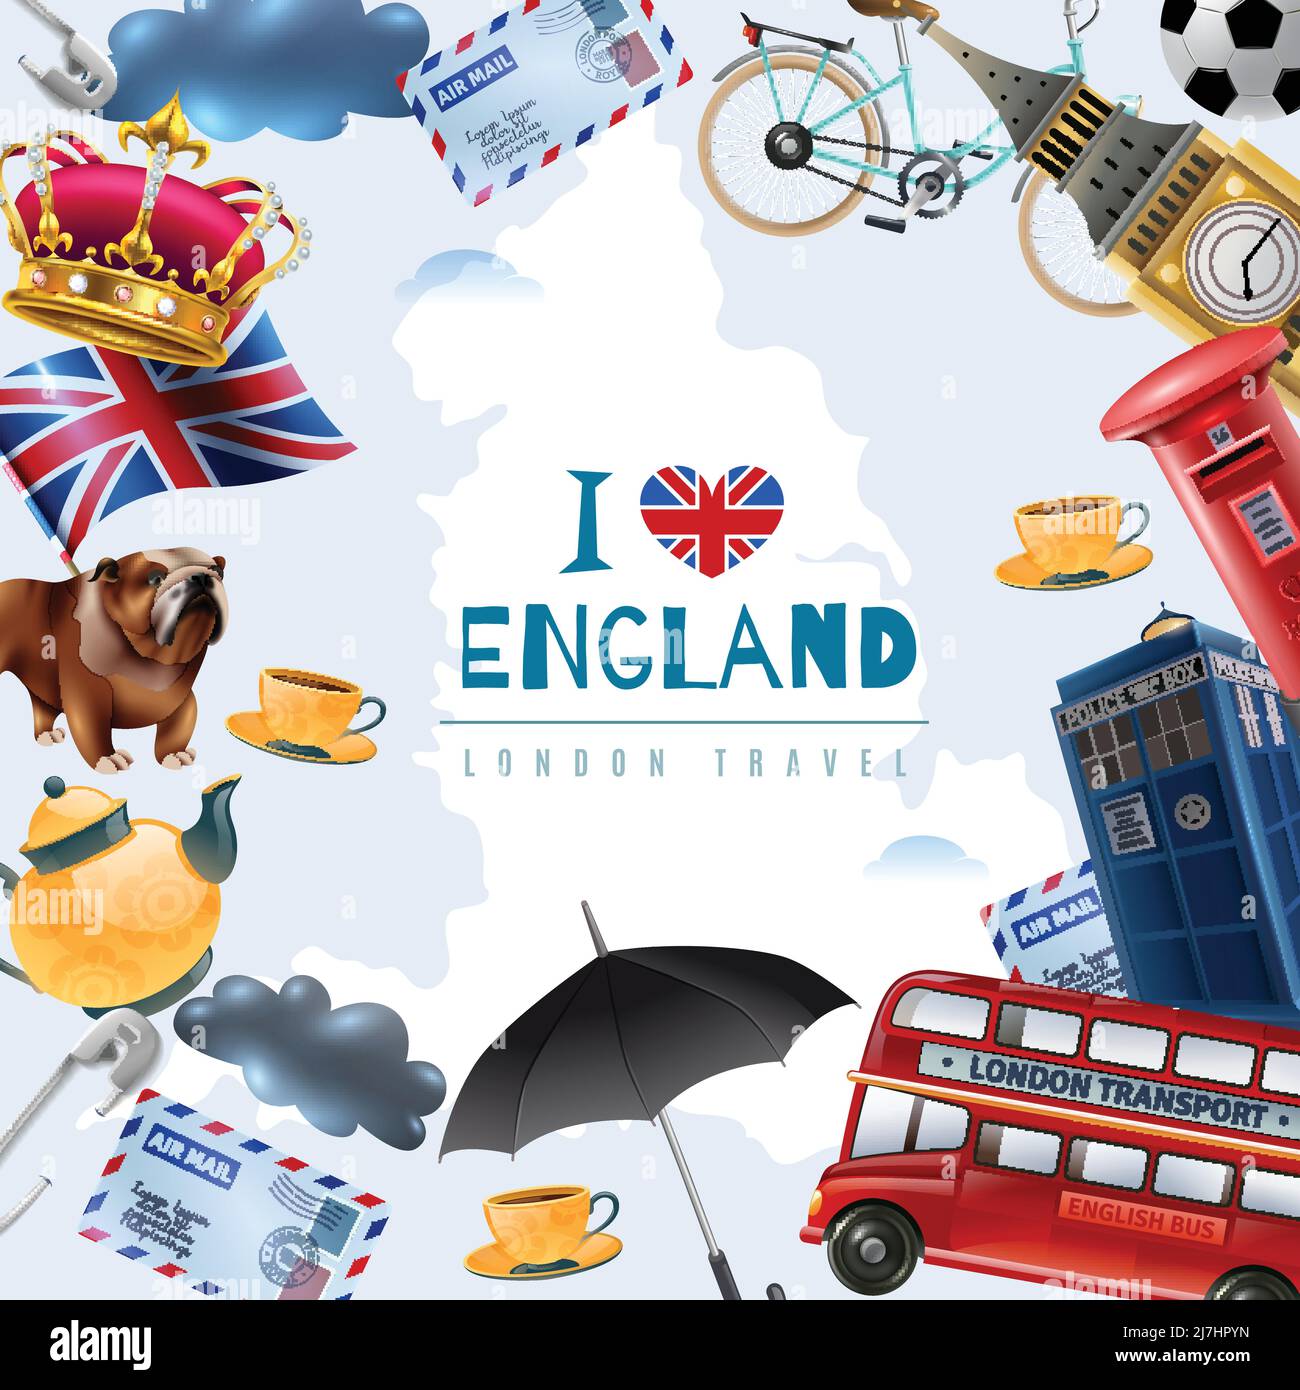 Inghilterra london Travel frame sfondo con collage di immagini piatte con elementi stereotipati e illustrazioni vettoriali di testo modificabili Illustrazione Vettoriale